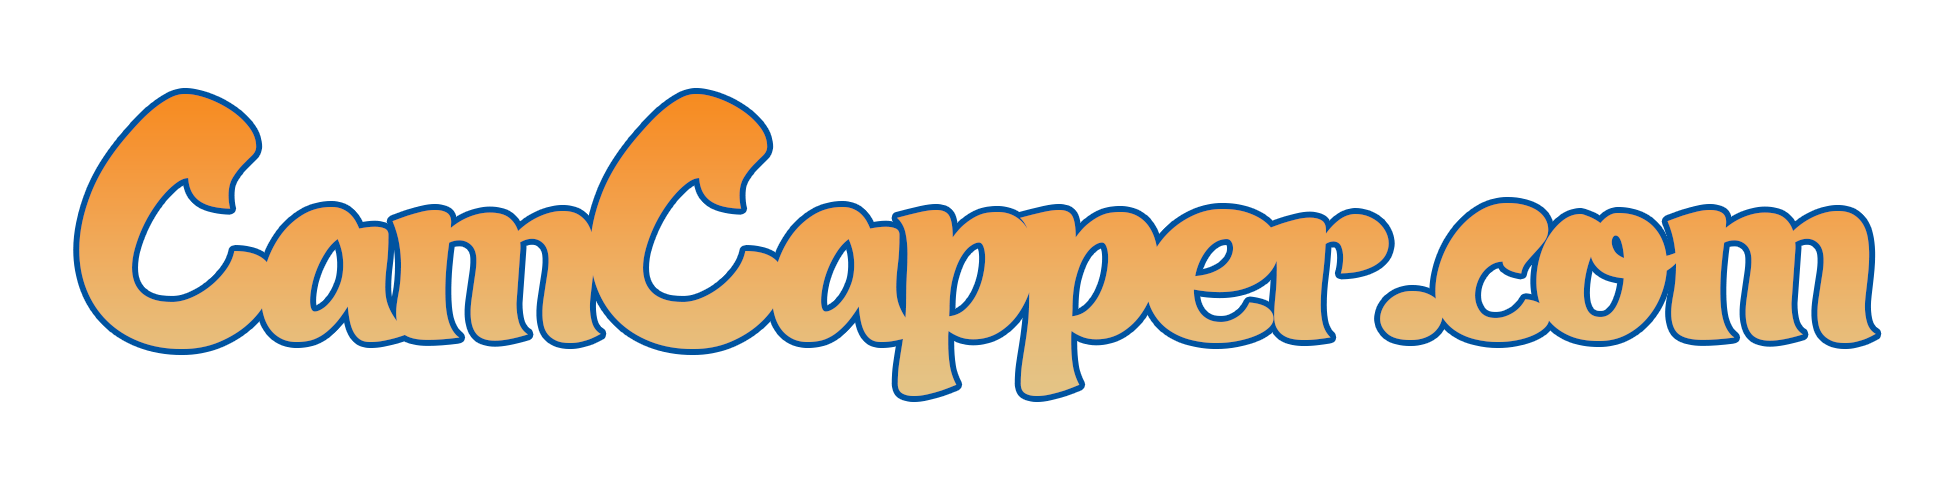 CamCapper Files